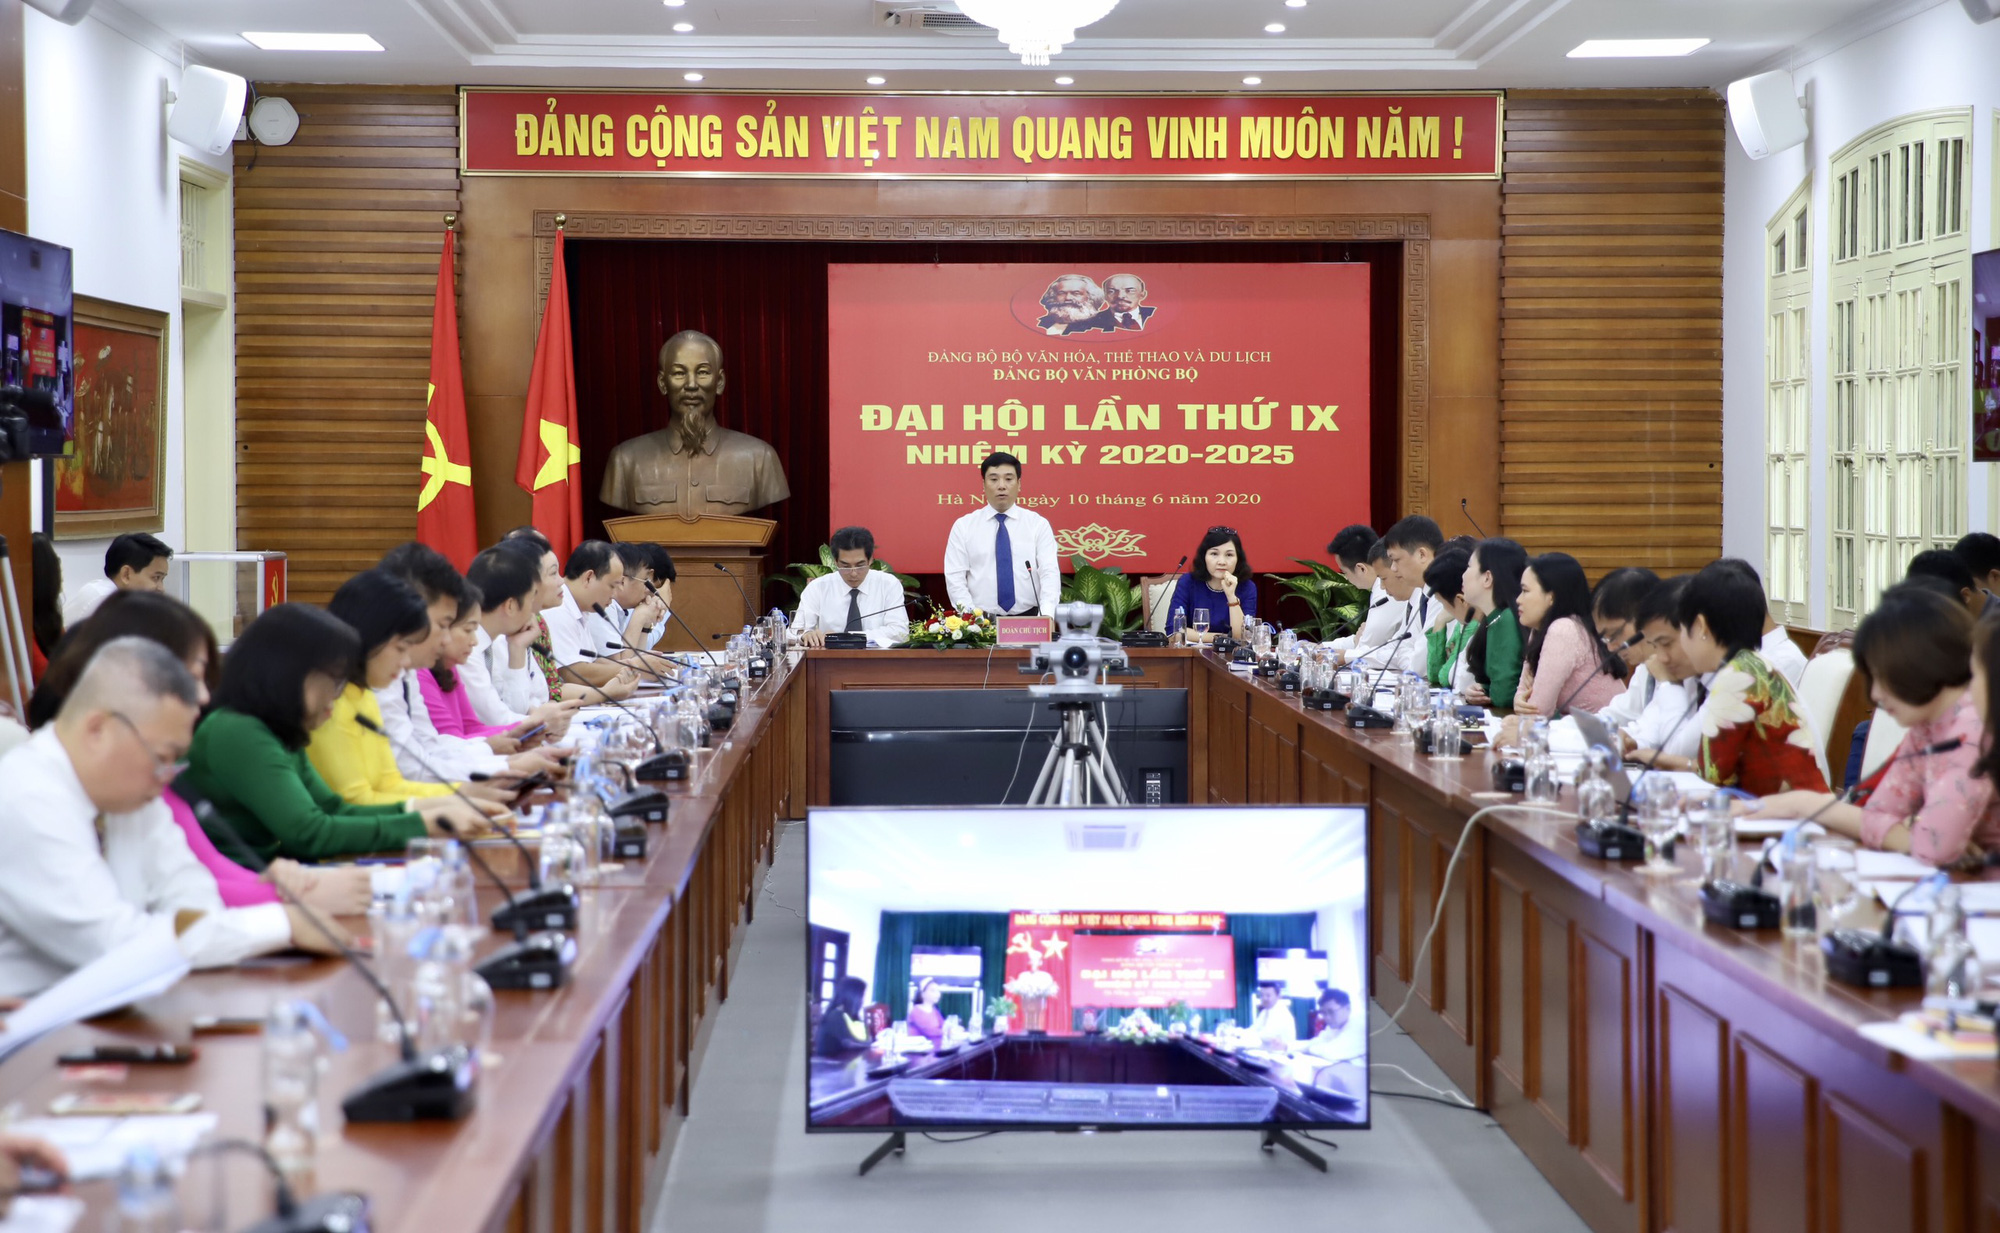  Ông Nguyễn Thái Bình tái đắc cử Bí thư Đảng ủy Văn phòng Bộ VHTTDL - Ảnh 2.